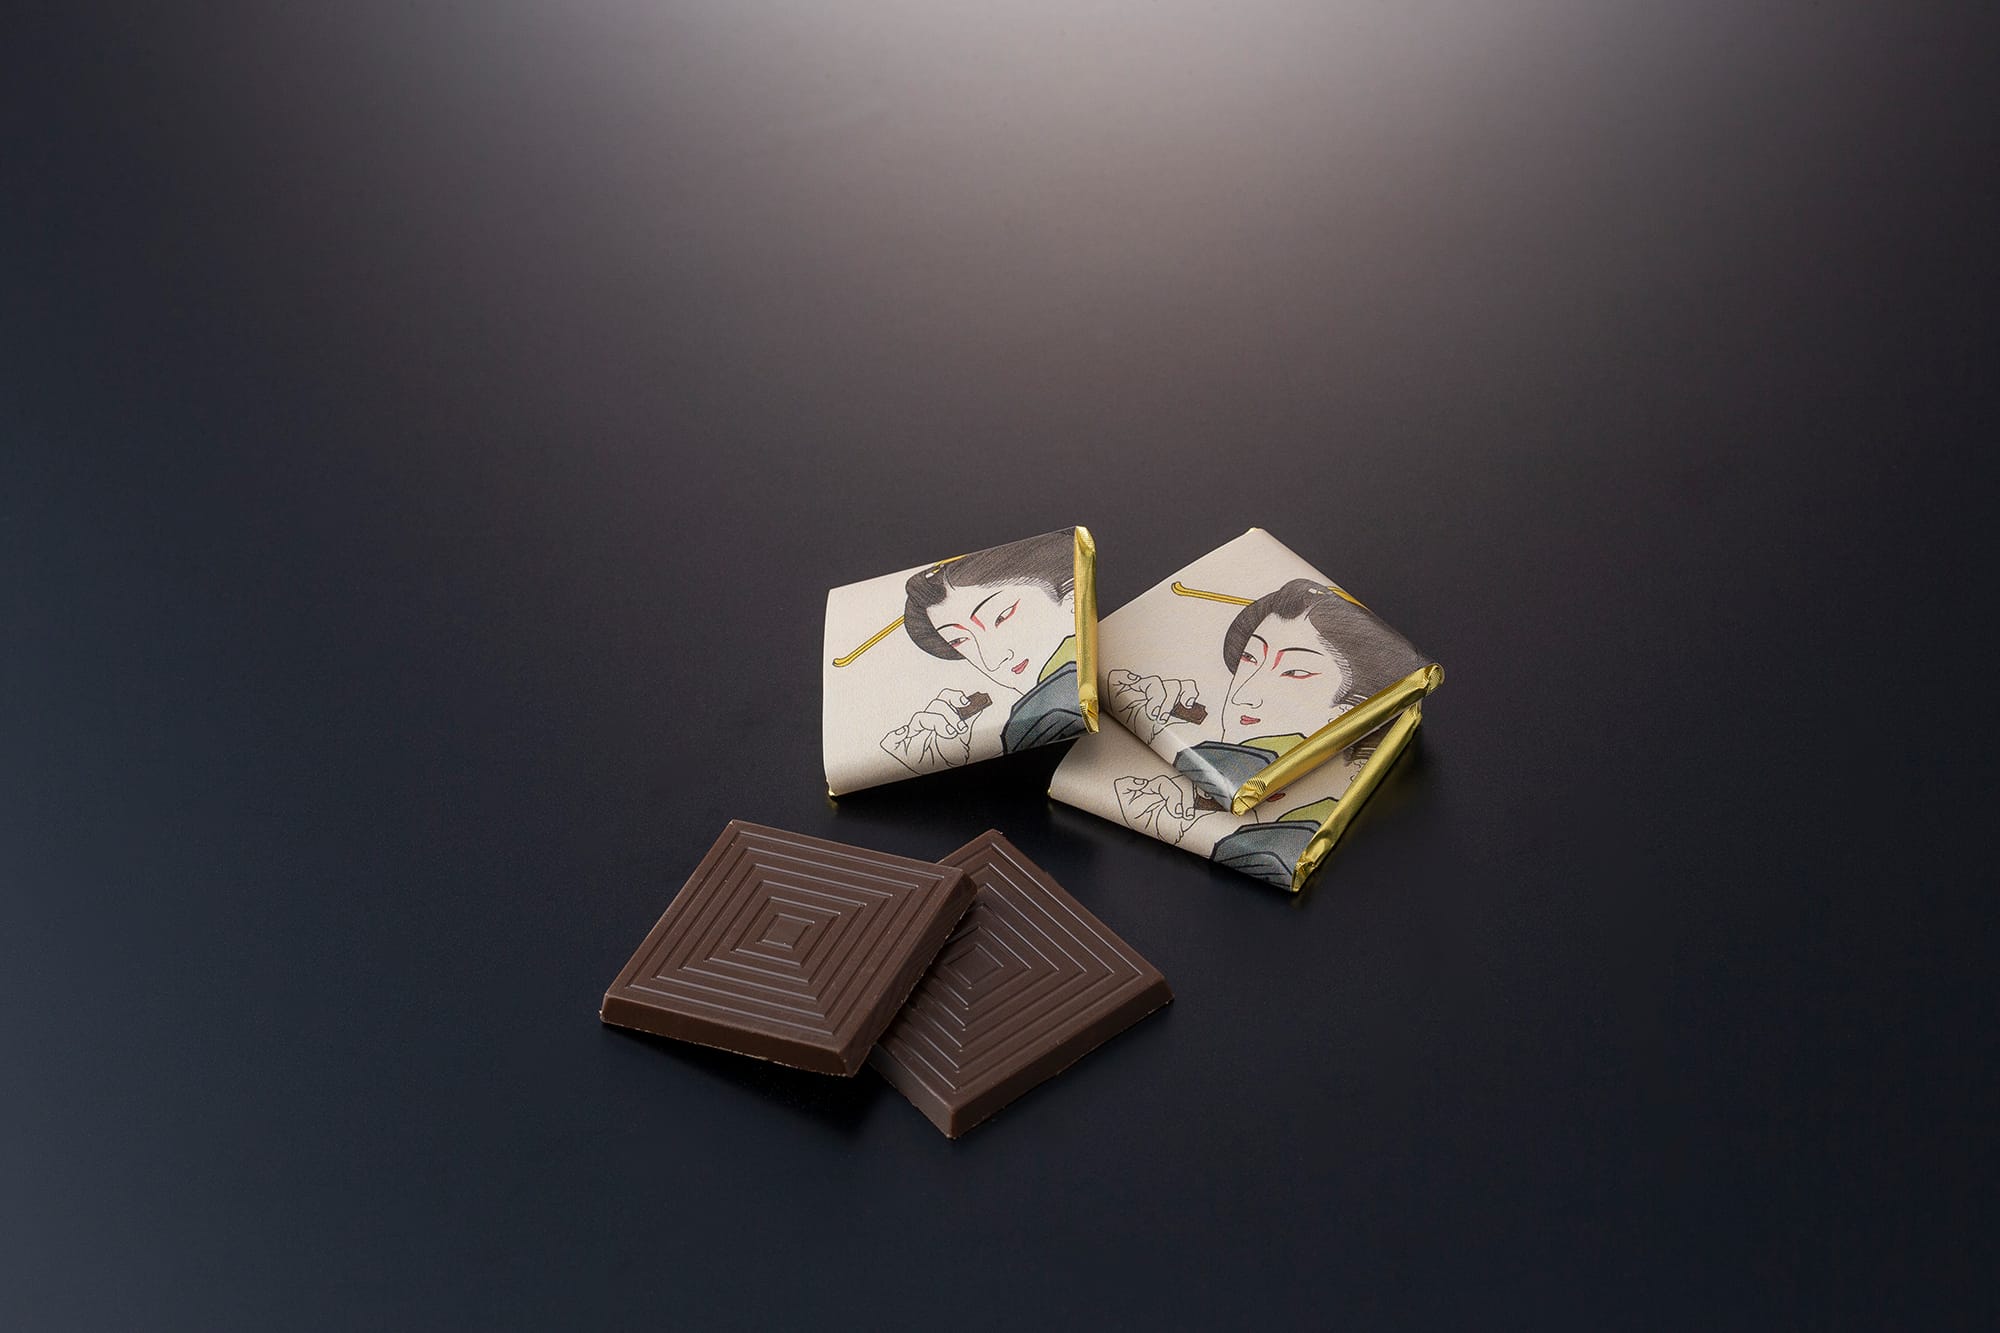 広島県因島で完全無農薬栽培した杜仲茶とコロンビア産カカオを使ったミルクチョコレートの組み合わせ。世界で求められる「日本人らしさ」を、海外でも活躍する芸術家のOZ-尾頭-山口佳祐デザインのパッケージと味の両方で表現した「高須しょくらあと」1,300円（税込）